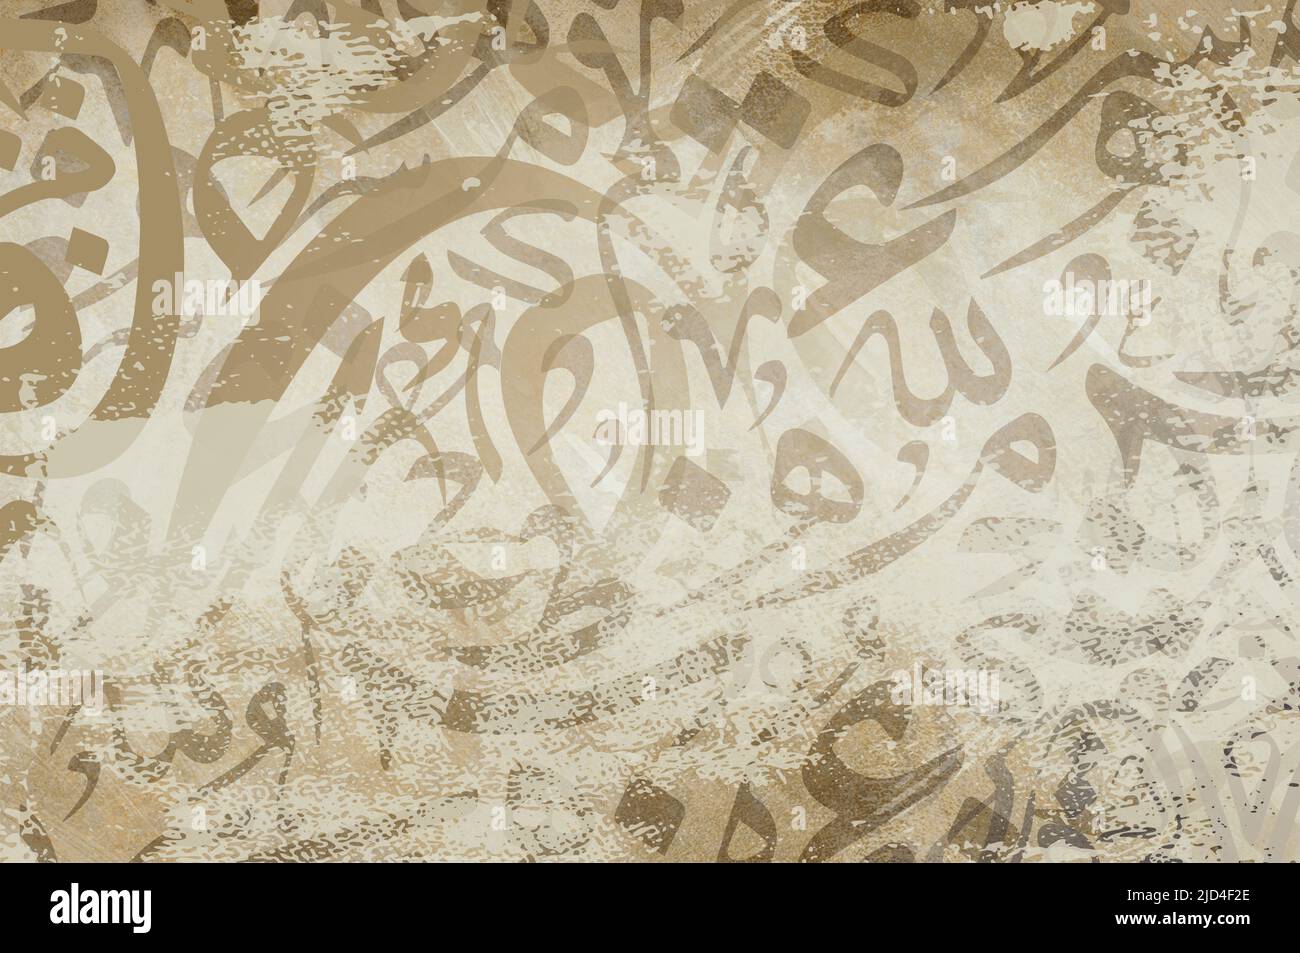 Carta da parati in calligrafia araba su una parete con sfondo marrone e intreccio di carta vecchia. Traduci "lettere arabe" Foto Stock